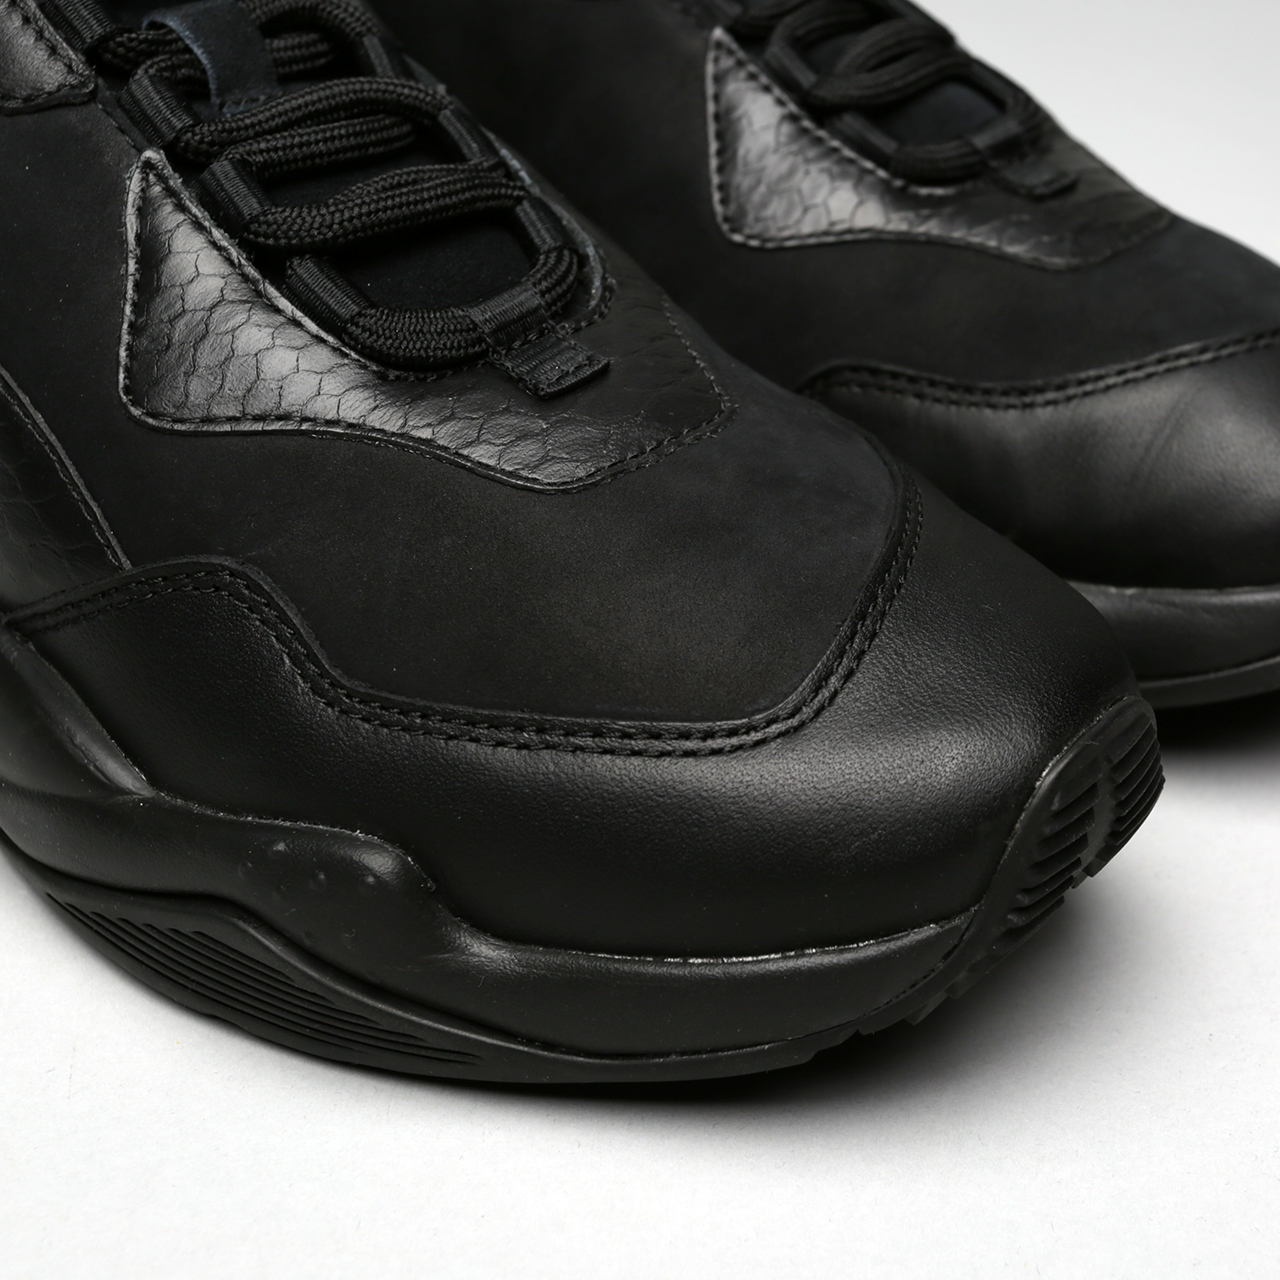 мужские черные кроссовки PUMA Thunder Desert 36799704 - цена, описание, фото 5